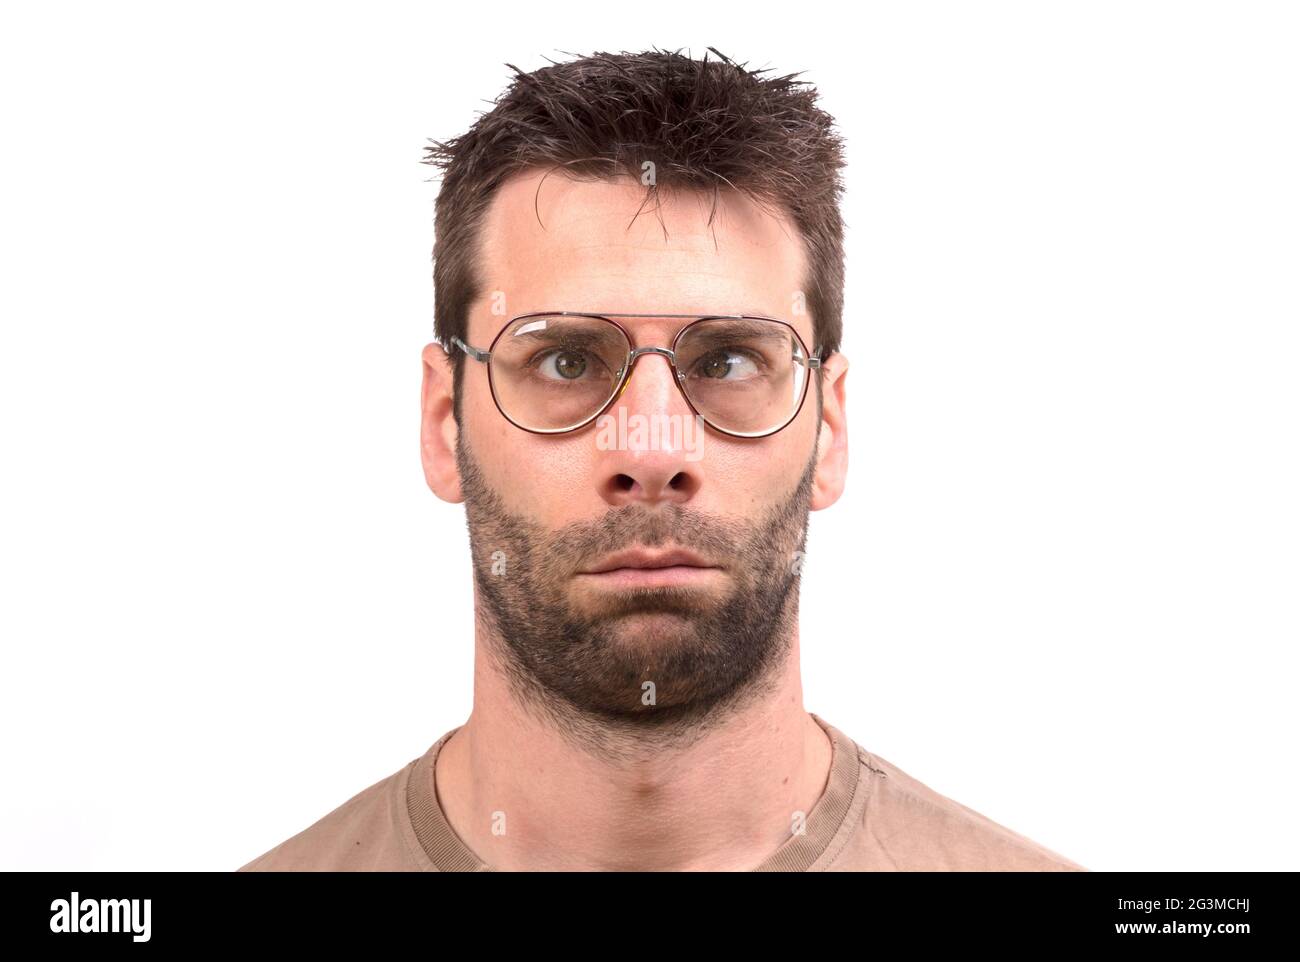 Hombre goofy con gafas vintage Fotografía de stock - Alamy